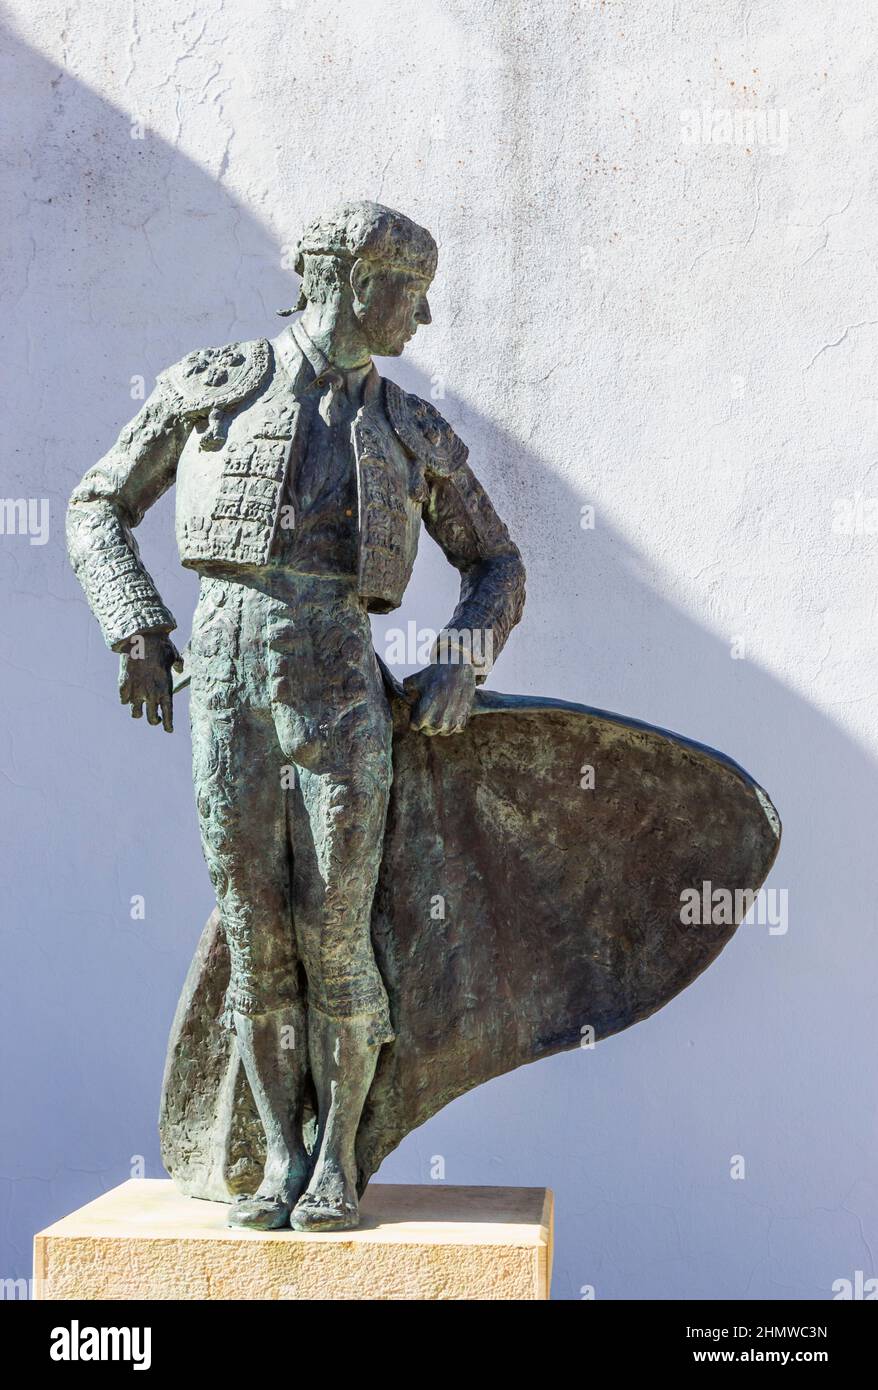 Ronda, Provinz Malaga, Andalusien, Spanien. Statue des Stierkampfes Cayetano Ordóñez y Aguilera, alias El Niño de La Palma, 1904 - 1961, außerhalb der lokalen b Stockfoto